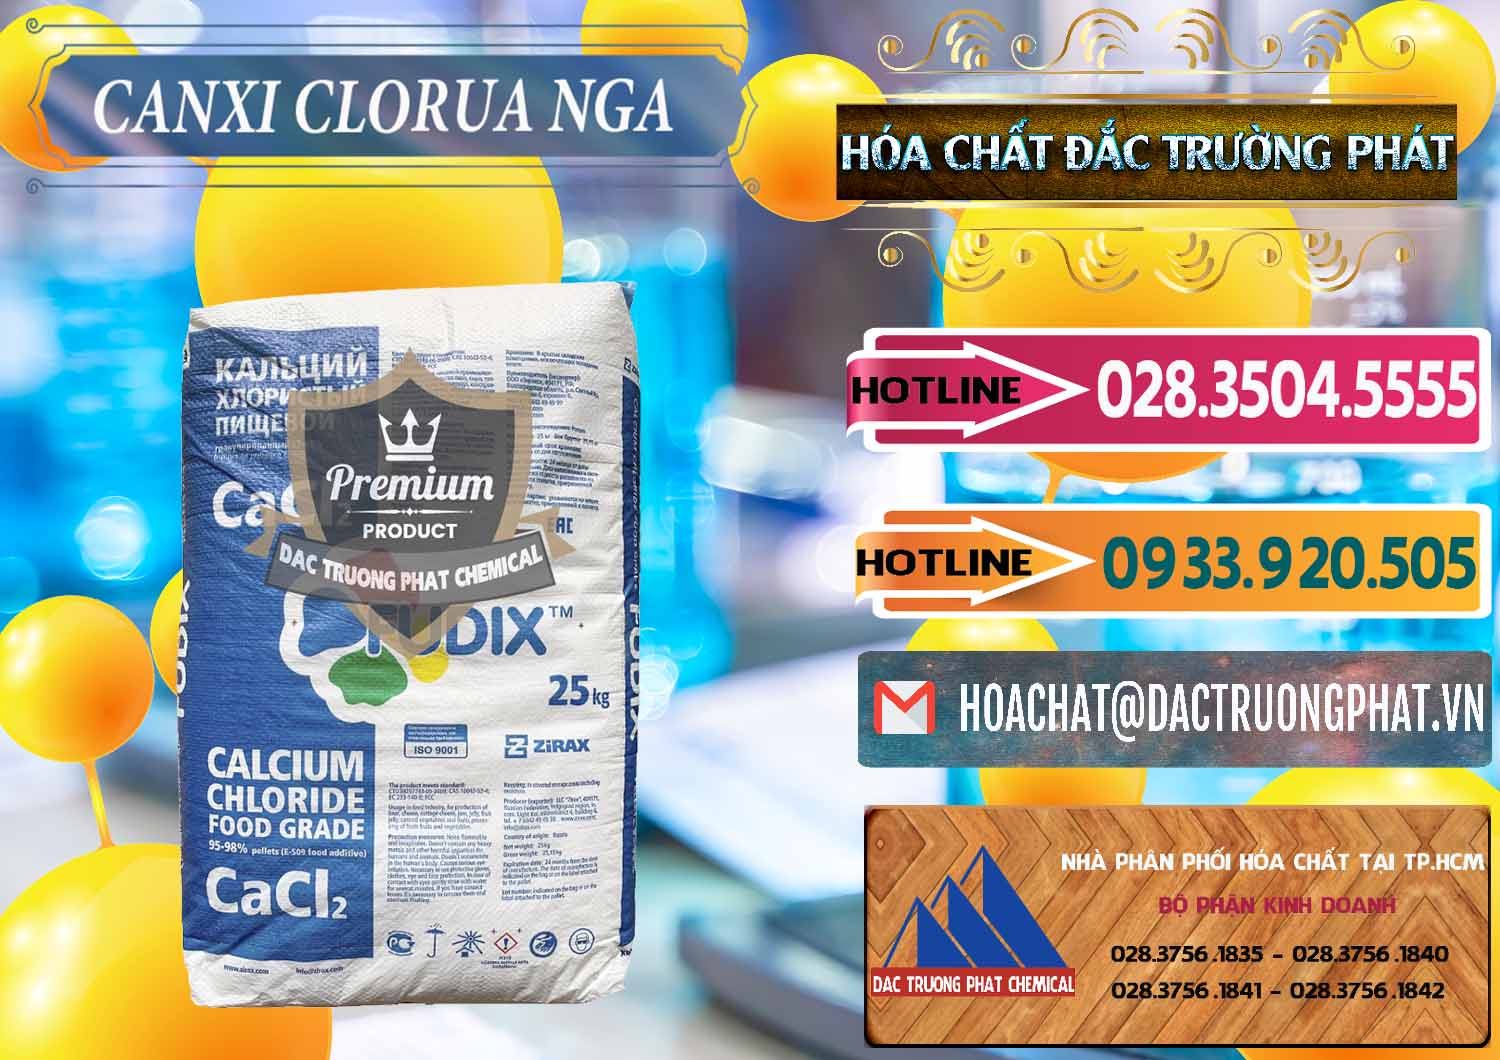 Cty chuyên cung ứng _ bán CaCl2 – Canxi Clorua Nga Russia - 0430 - Đơn vị chuyên nhập khẩu _ cung cấp hóa chất tại TP.HCM - dactruongphat.vn